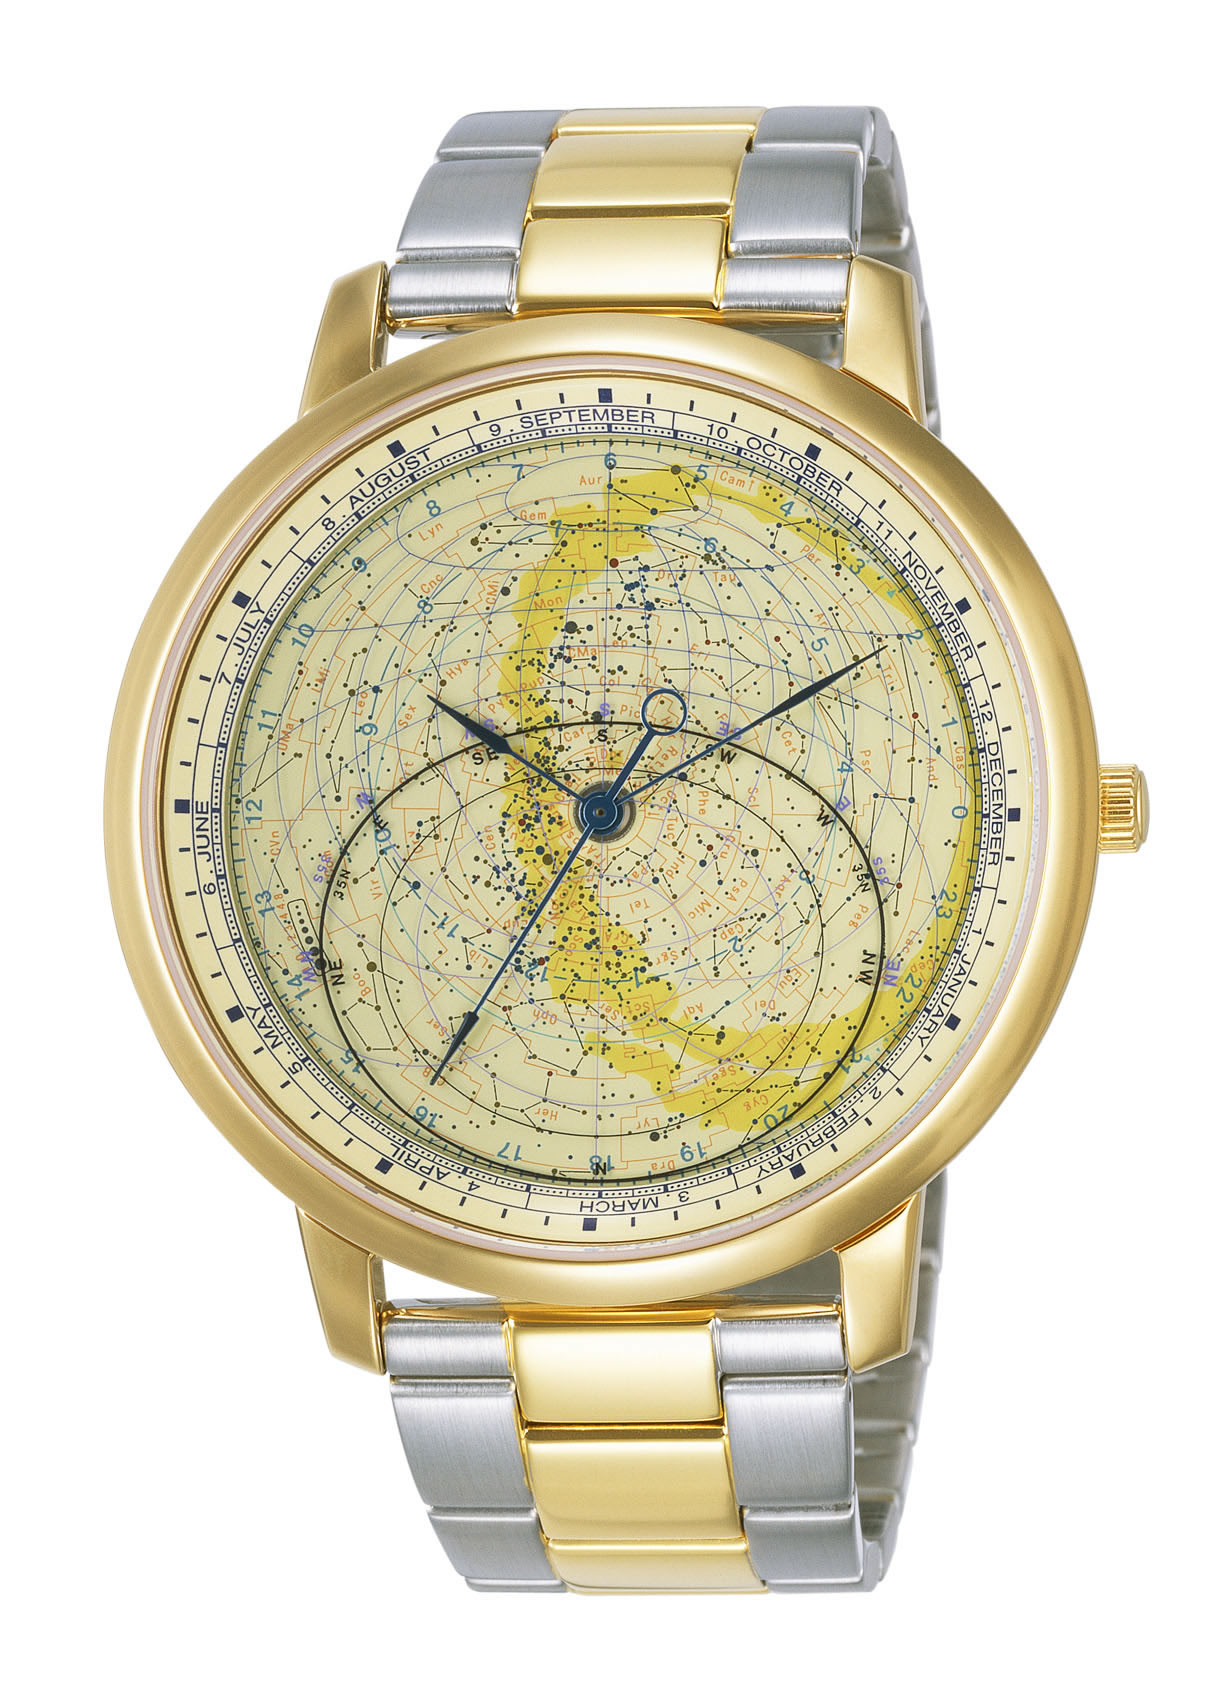 ASTRODEA アストロデア 新南天ウオッチ Cal.4P82 - 腕時計(アナログ)